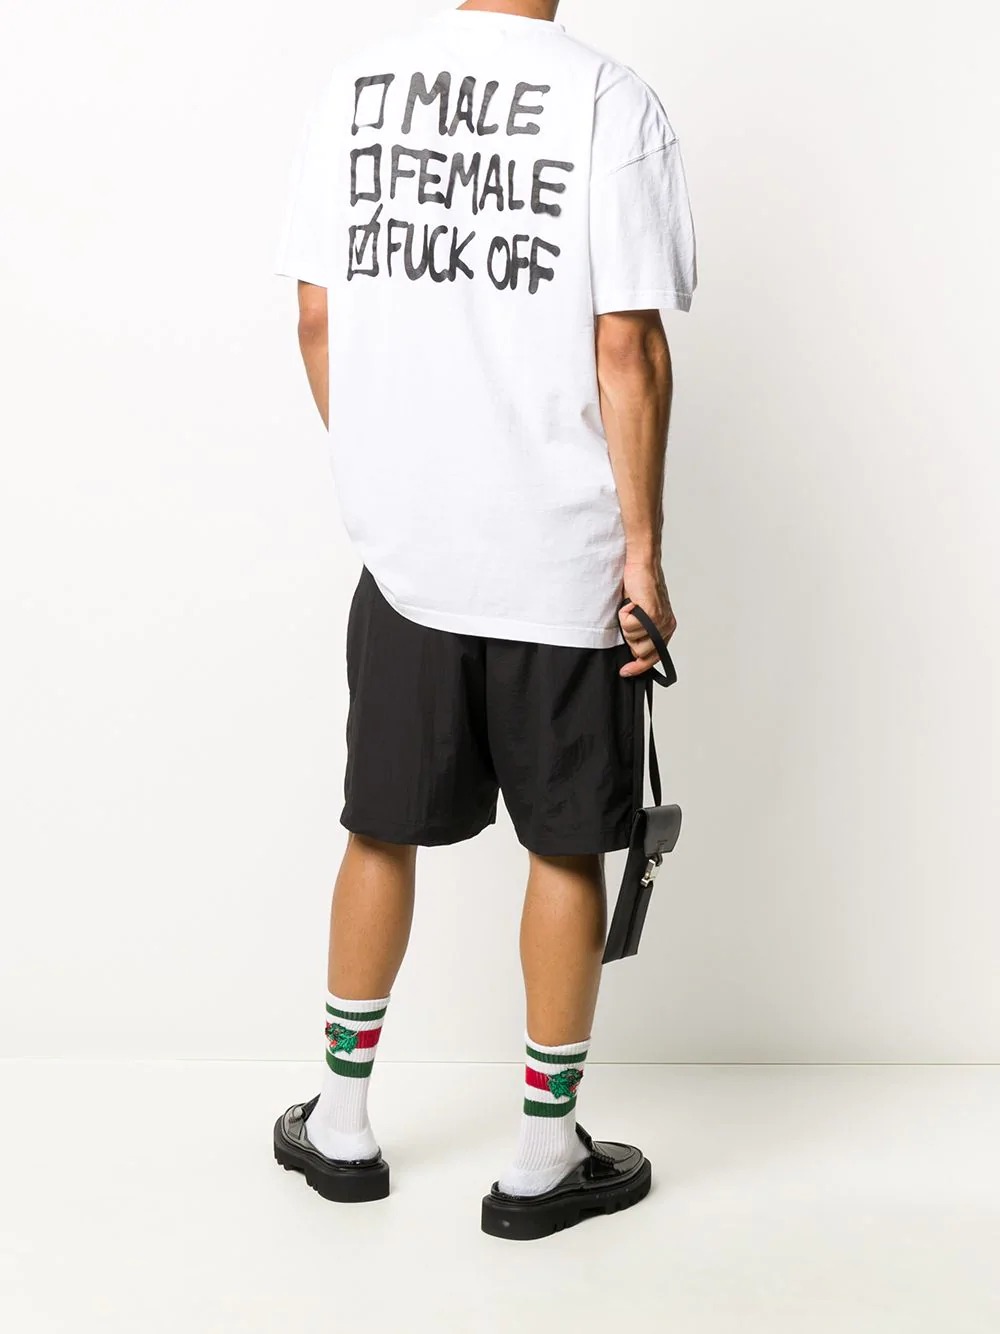 思わず目を引く メンズにおすすめのバックプリントtシャツ10選 メンズファッションメディア Otokomaeotokomae 男前研究所